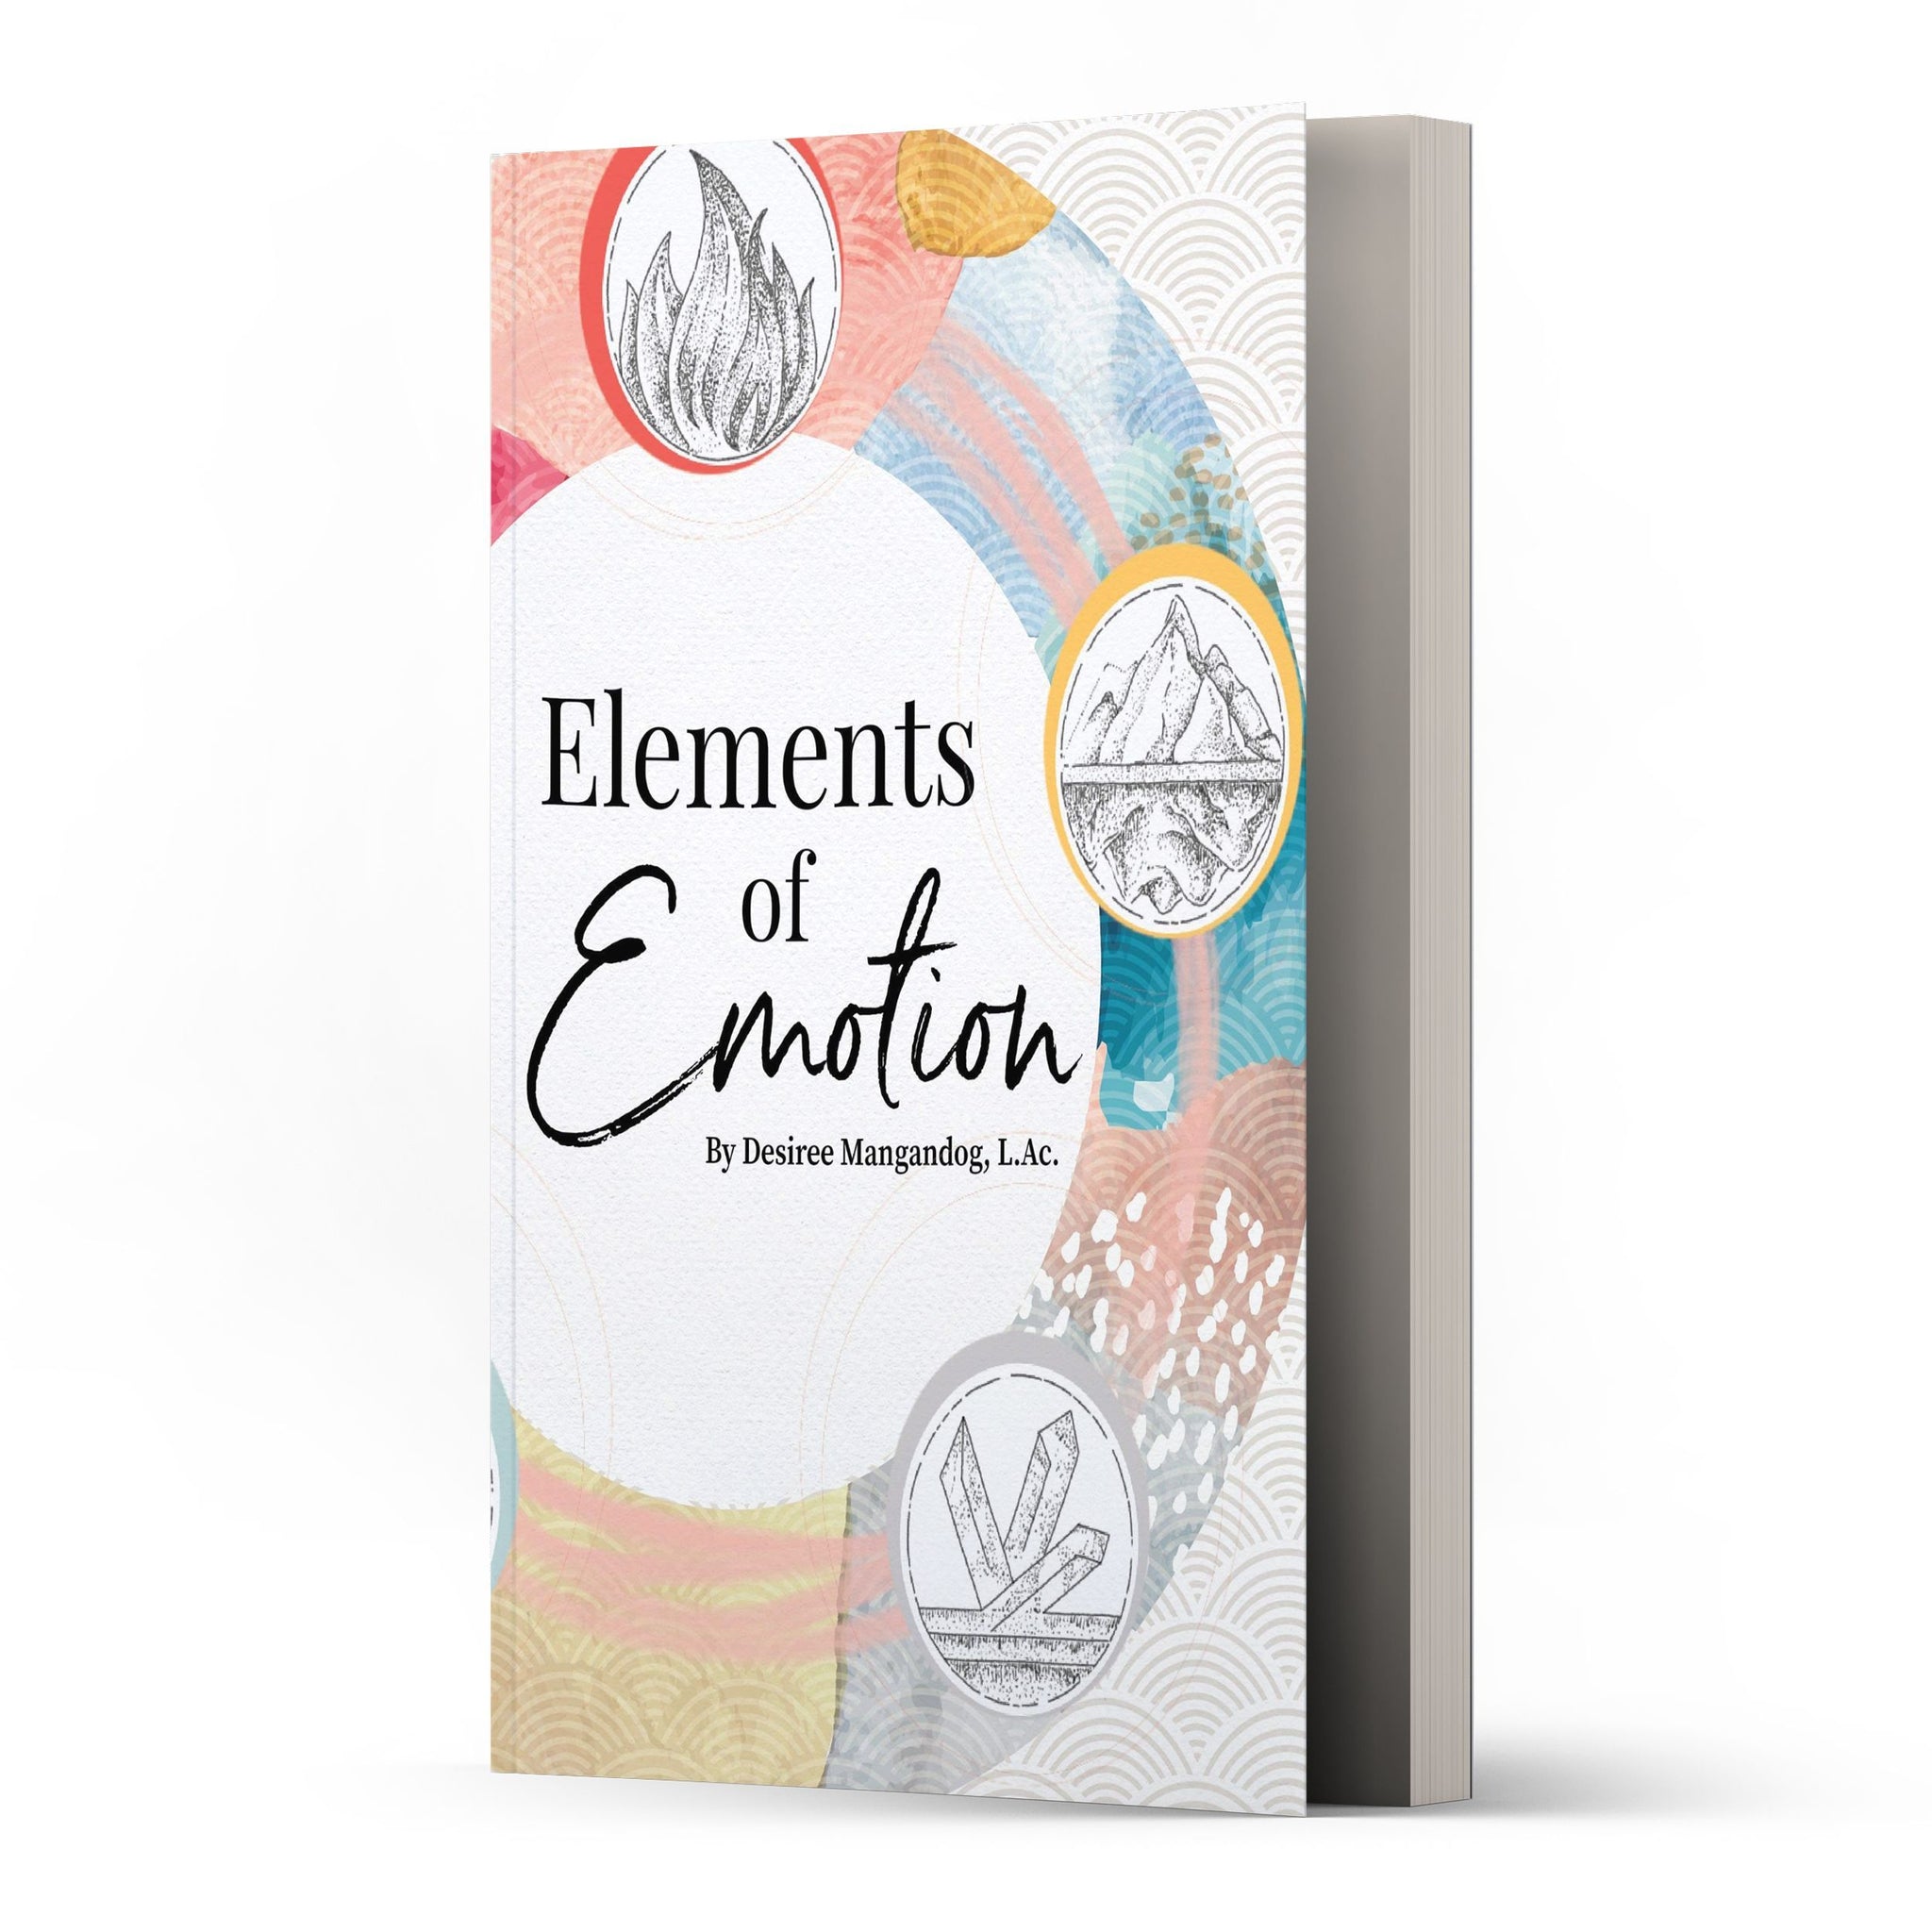 Elements of Emotion by Desiree Mangandog